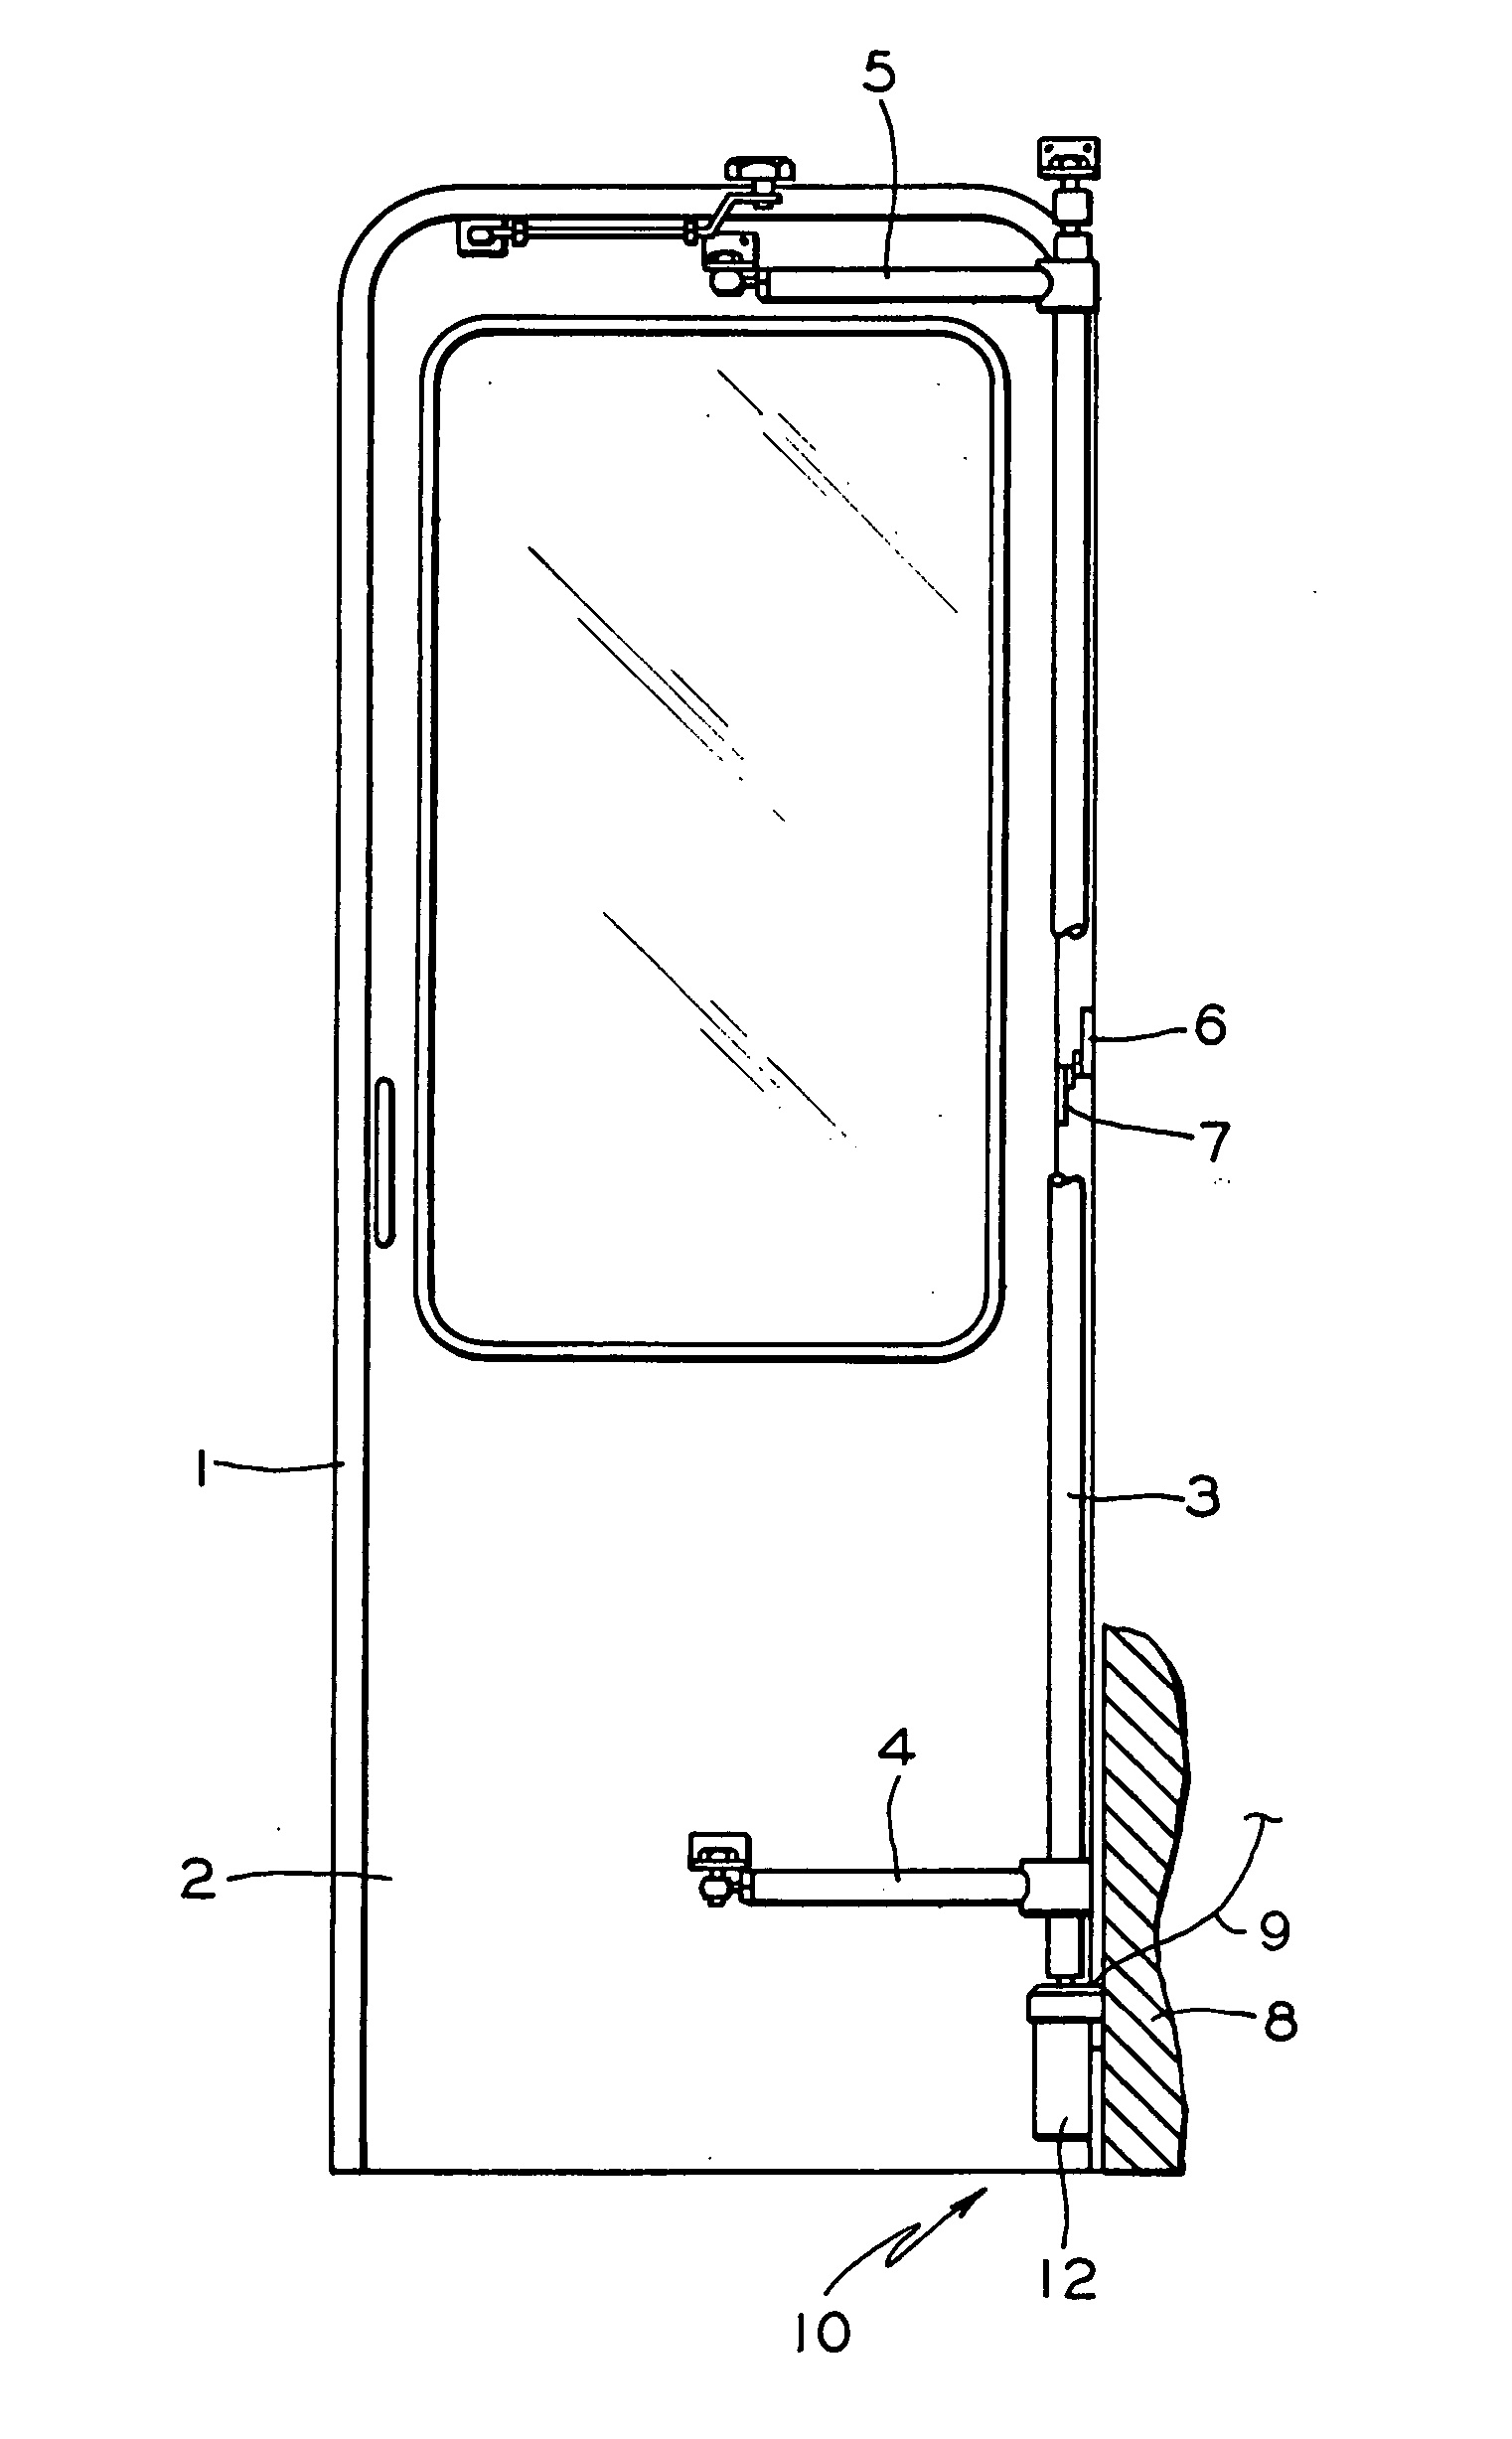 Unlock mechanism for a rotary door operator